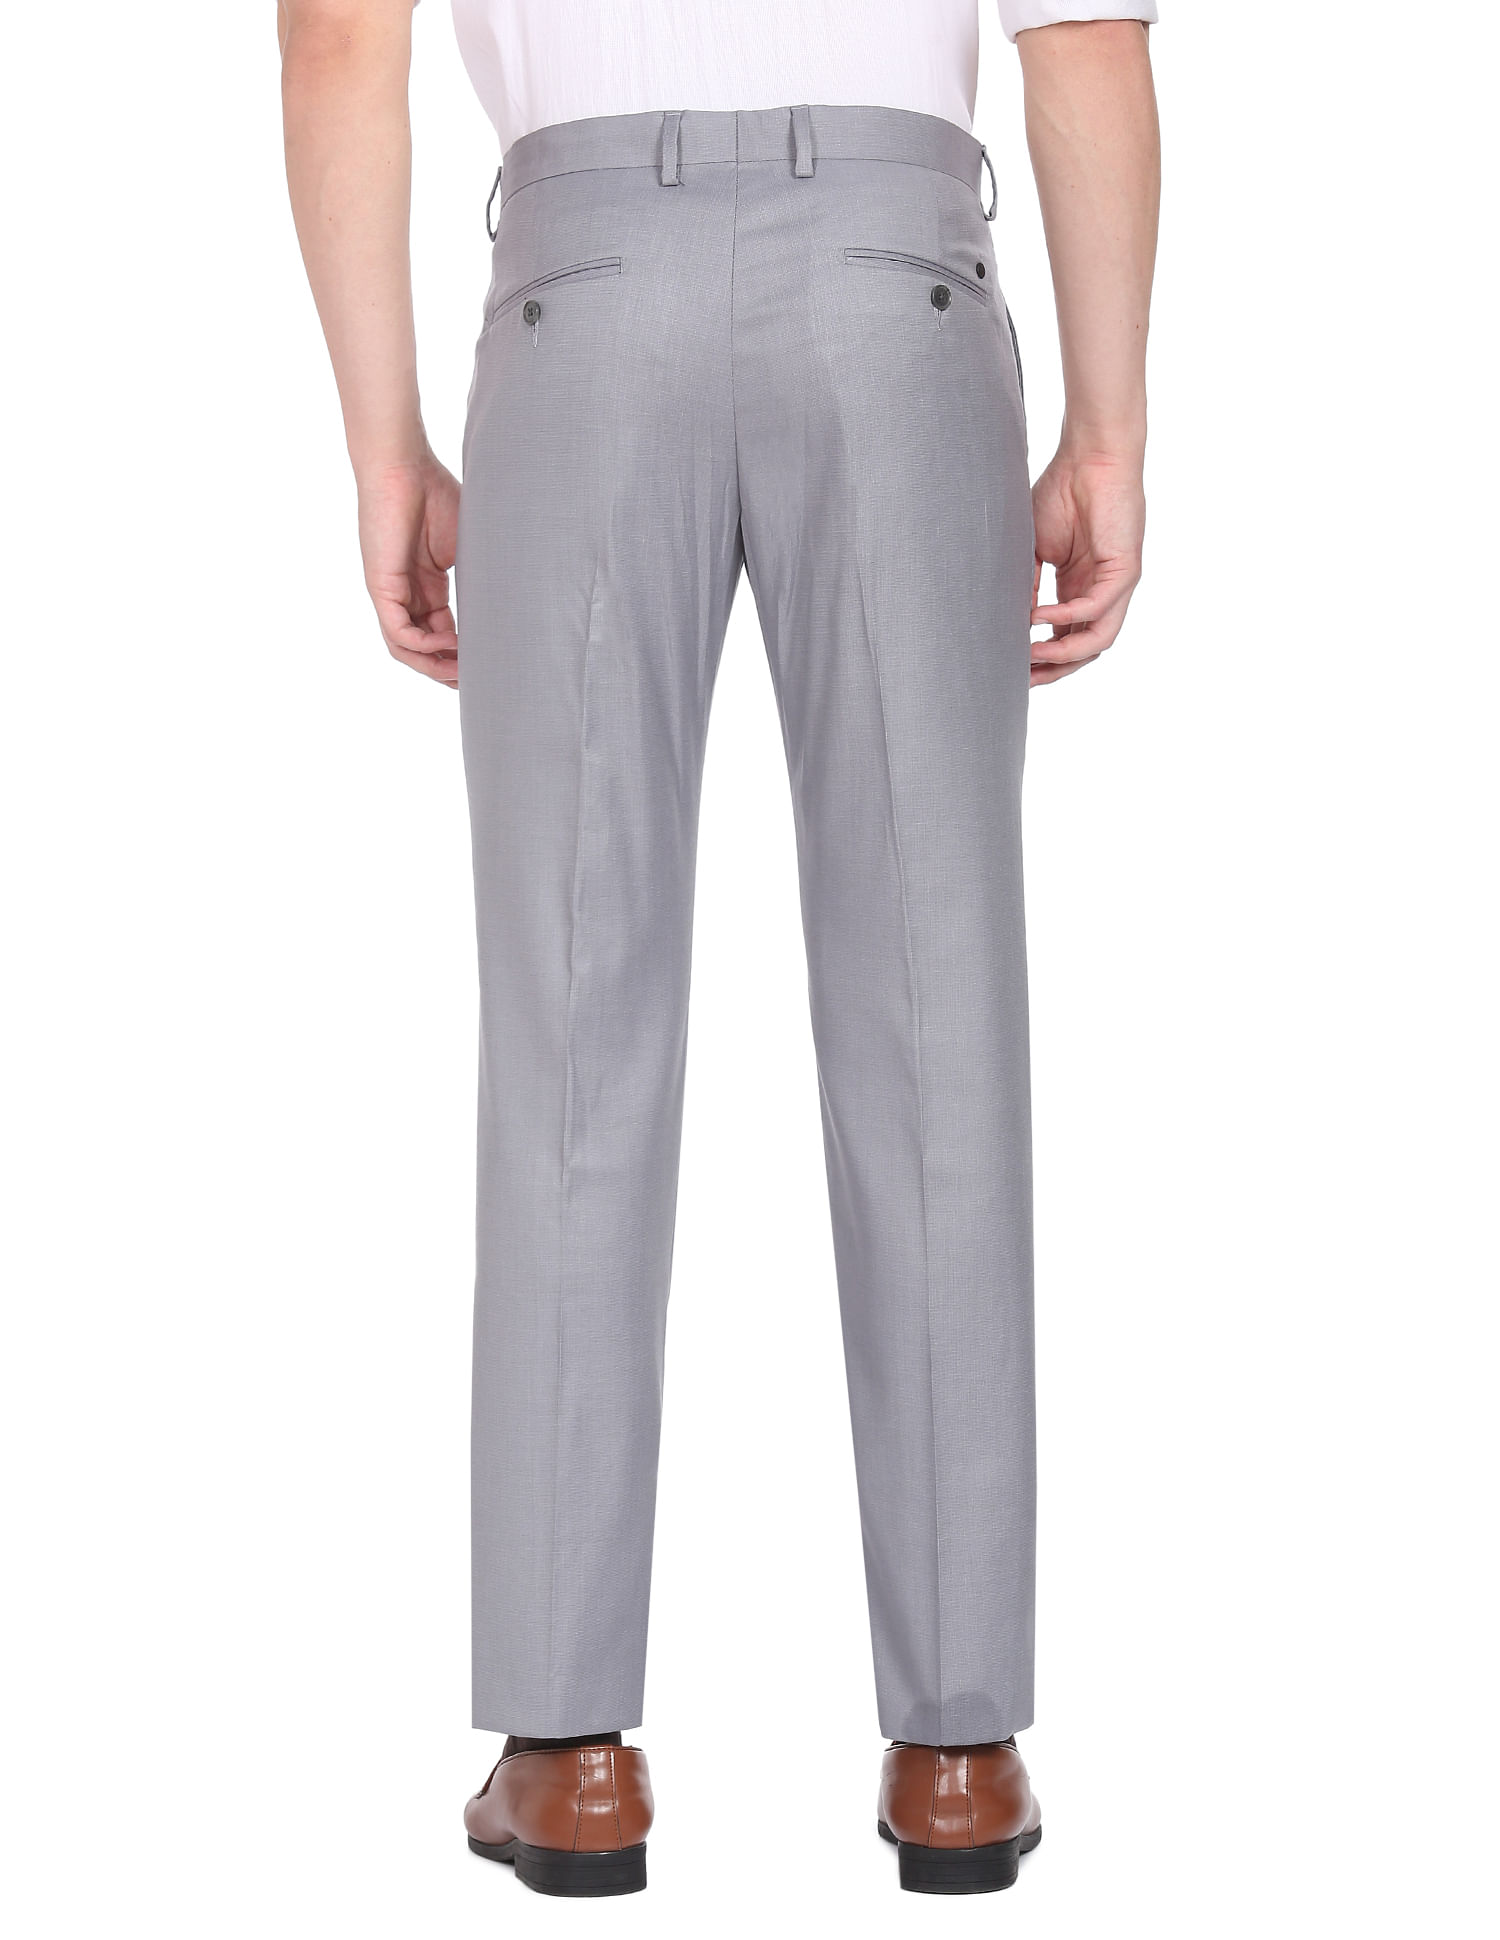 Buy Steel Blue Trousers & Pants for Men by ARROW Online | Ajio.com